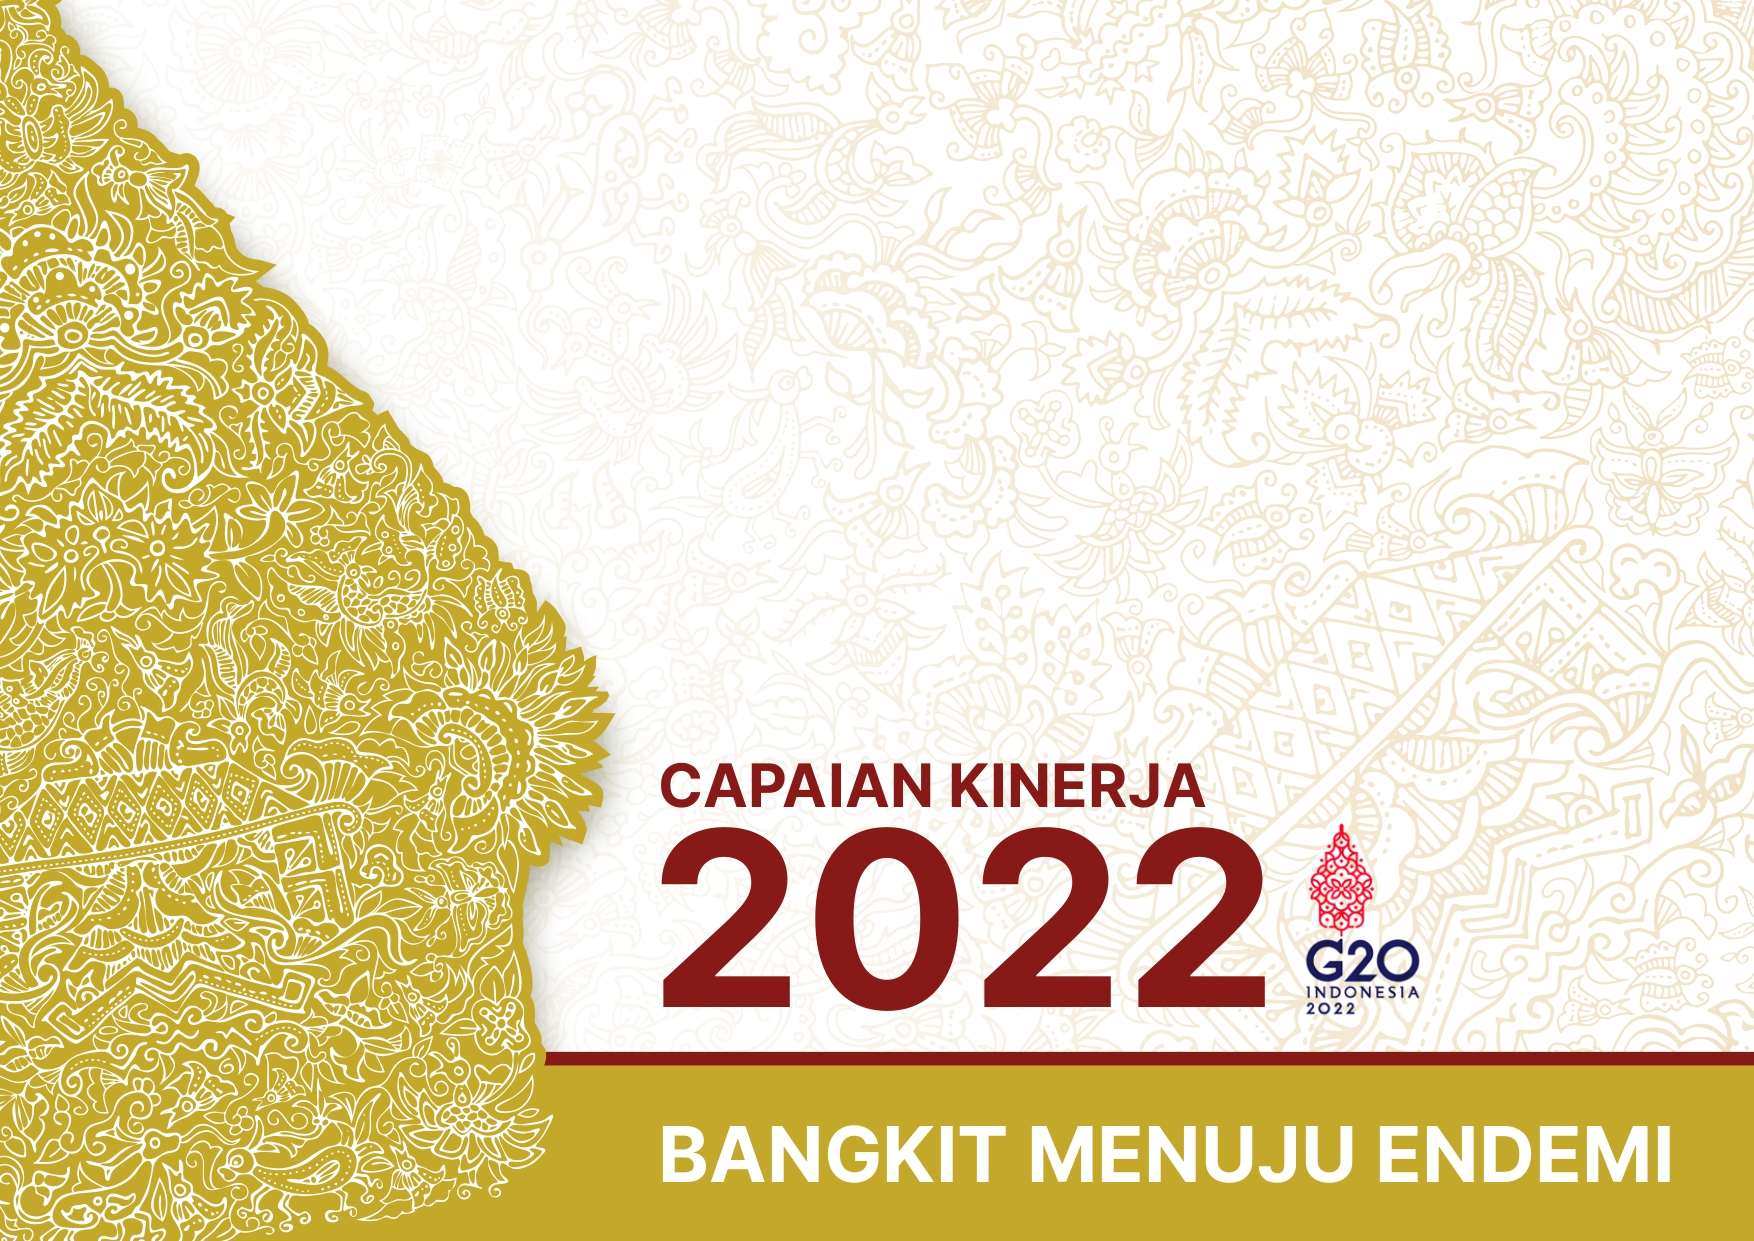 id5941_Capaian Kinerja 2022 - Bangkit Menuju Endemi_page-0001.jpg